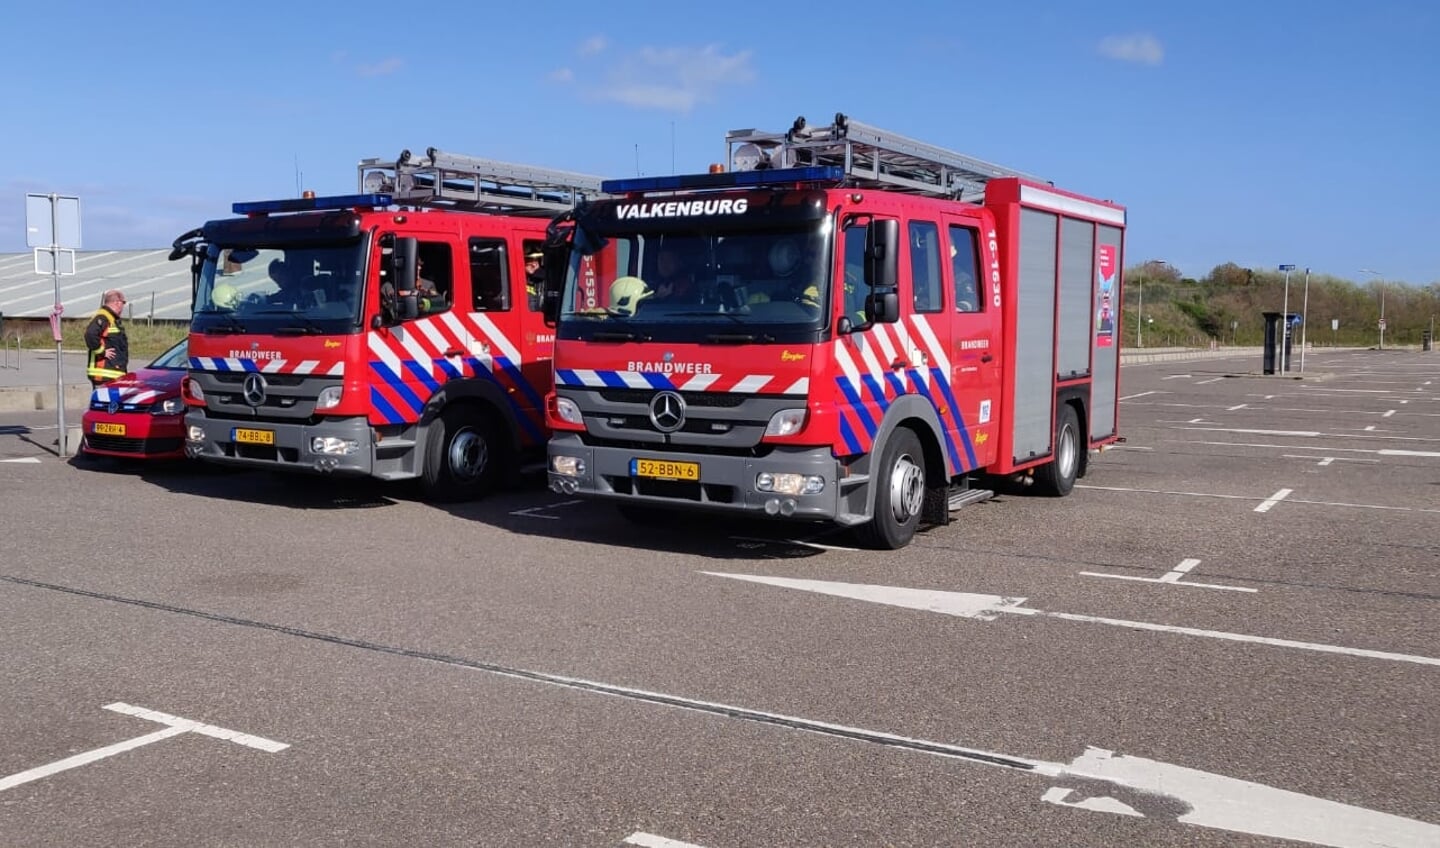 De brandweerwagens van Rijnsburg en Valkenburg stonden standy